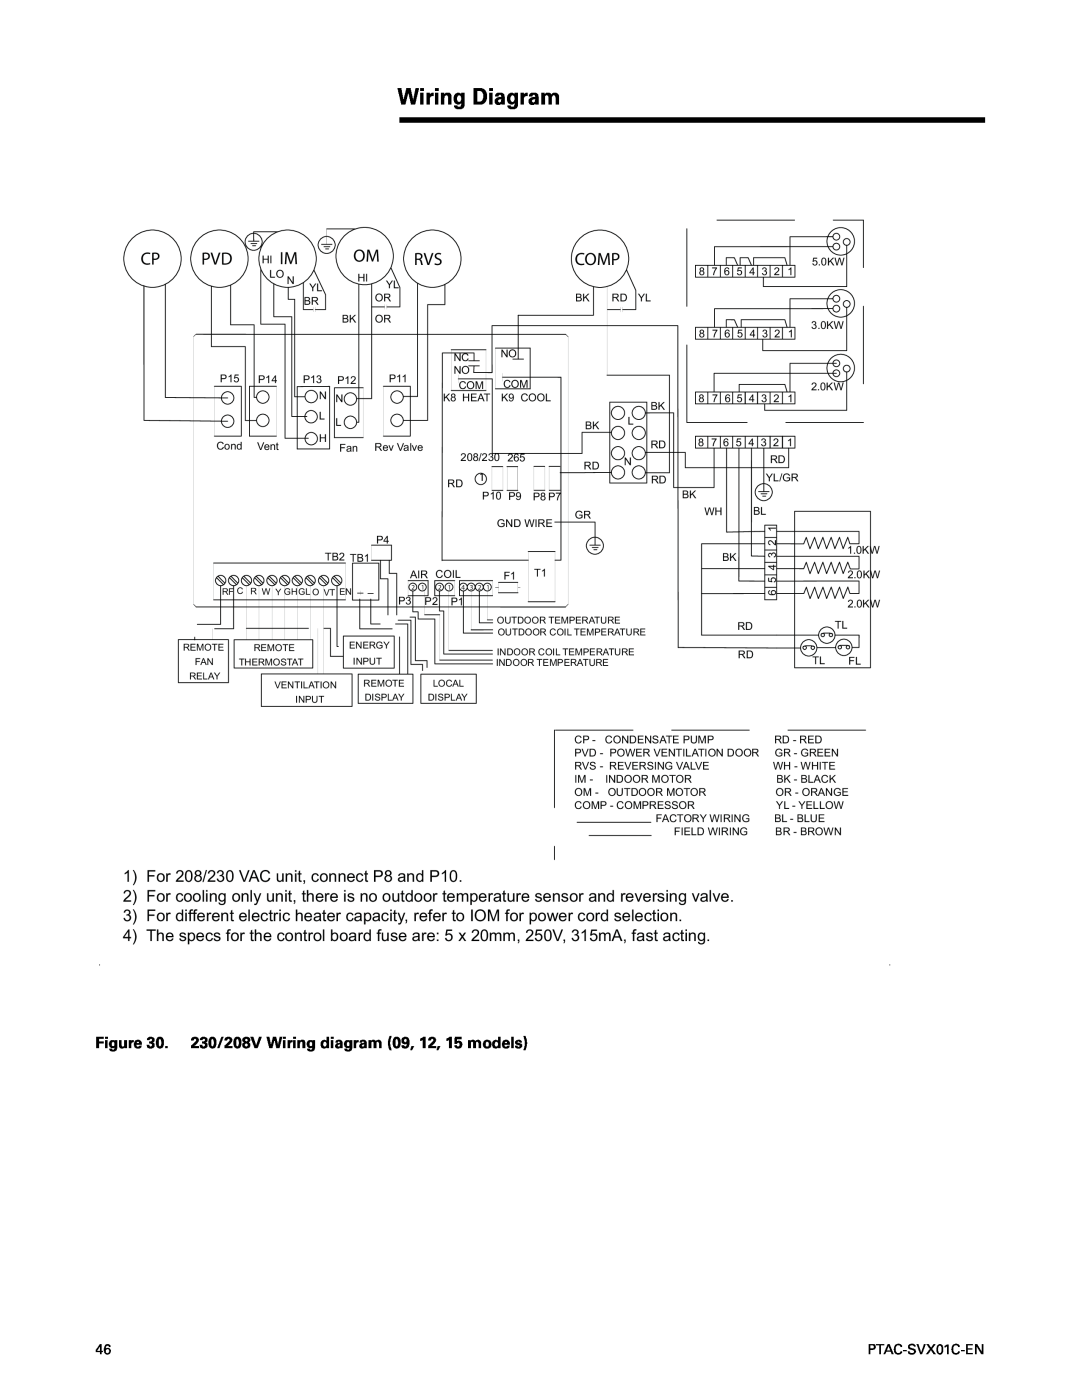 Trane PTAC-SVX01C-EN manual Wiring Diagram 